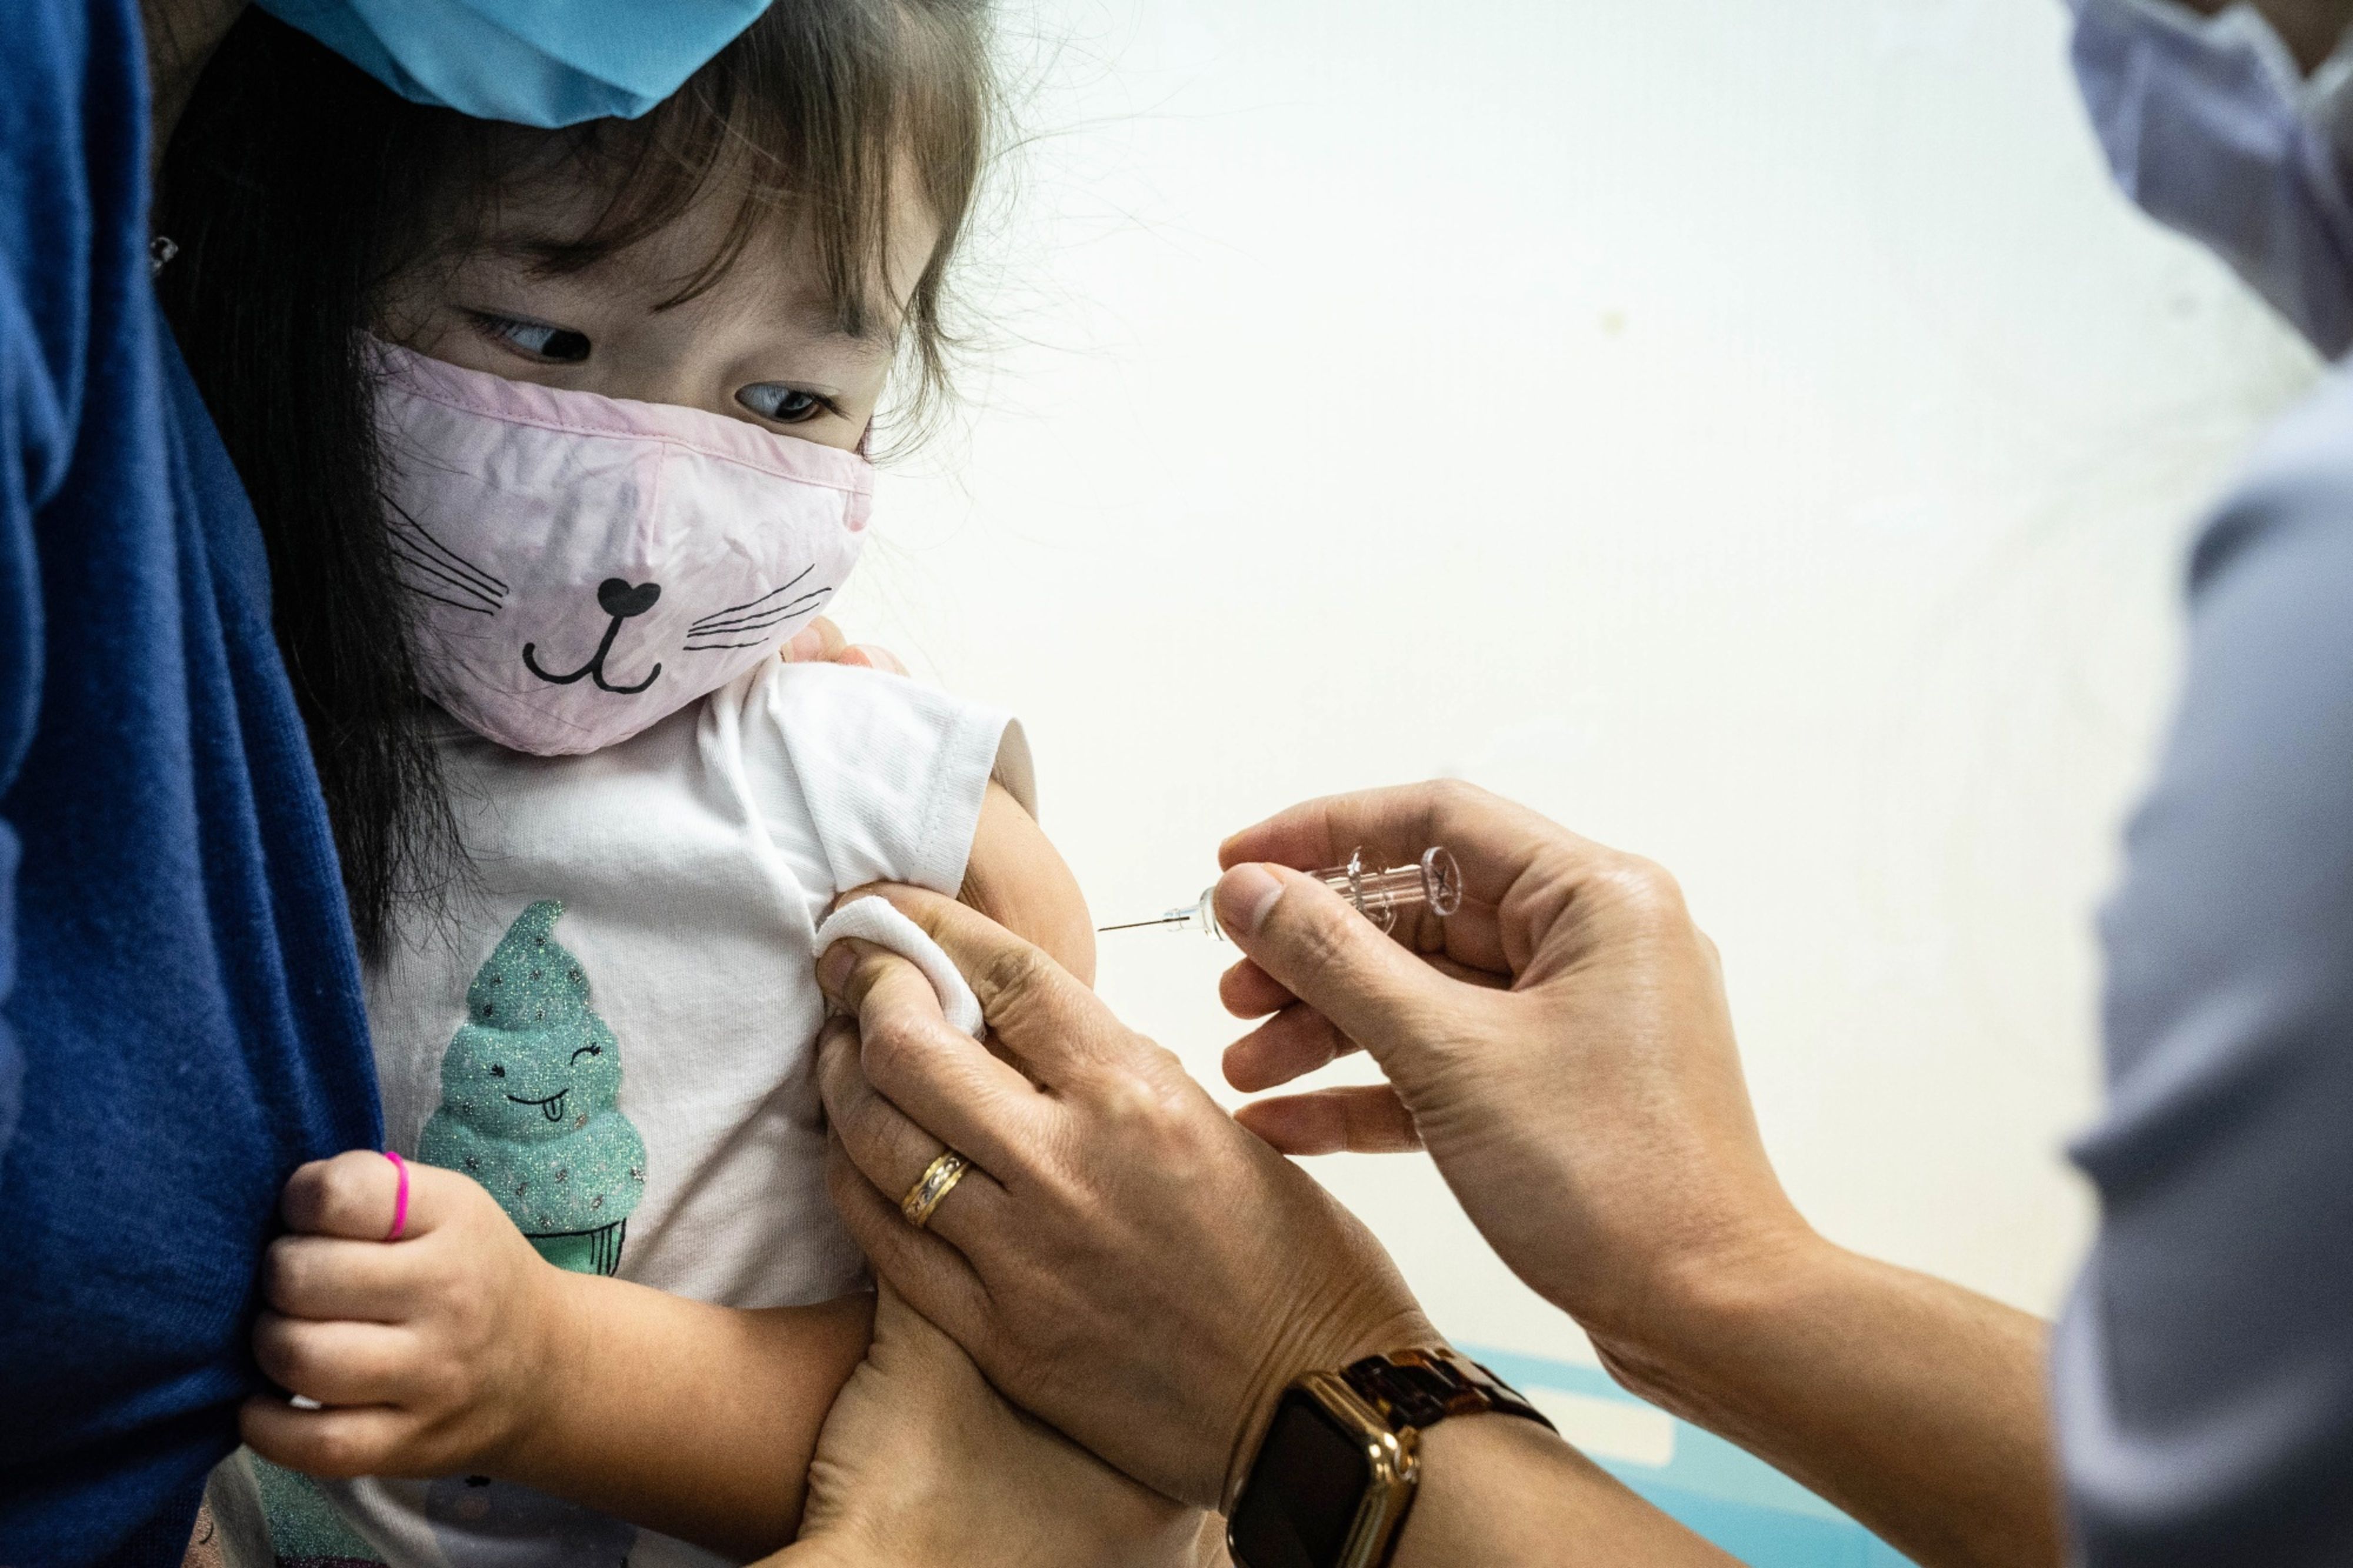 Los expertos buscan fortalecer el programa nacional de inmunización para llegar a las poblaciones con acceso limitado a los servicios de salud (Foto: Lam Yik/Bloomberg)